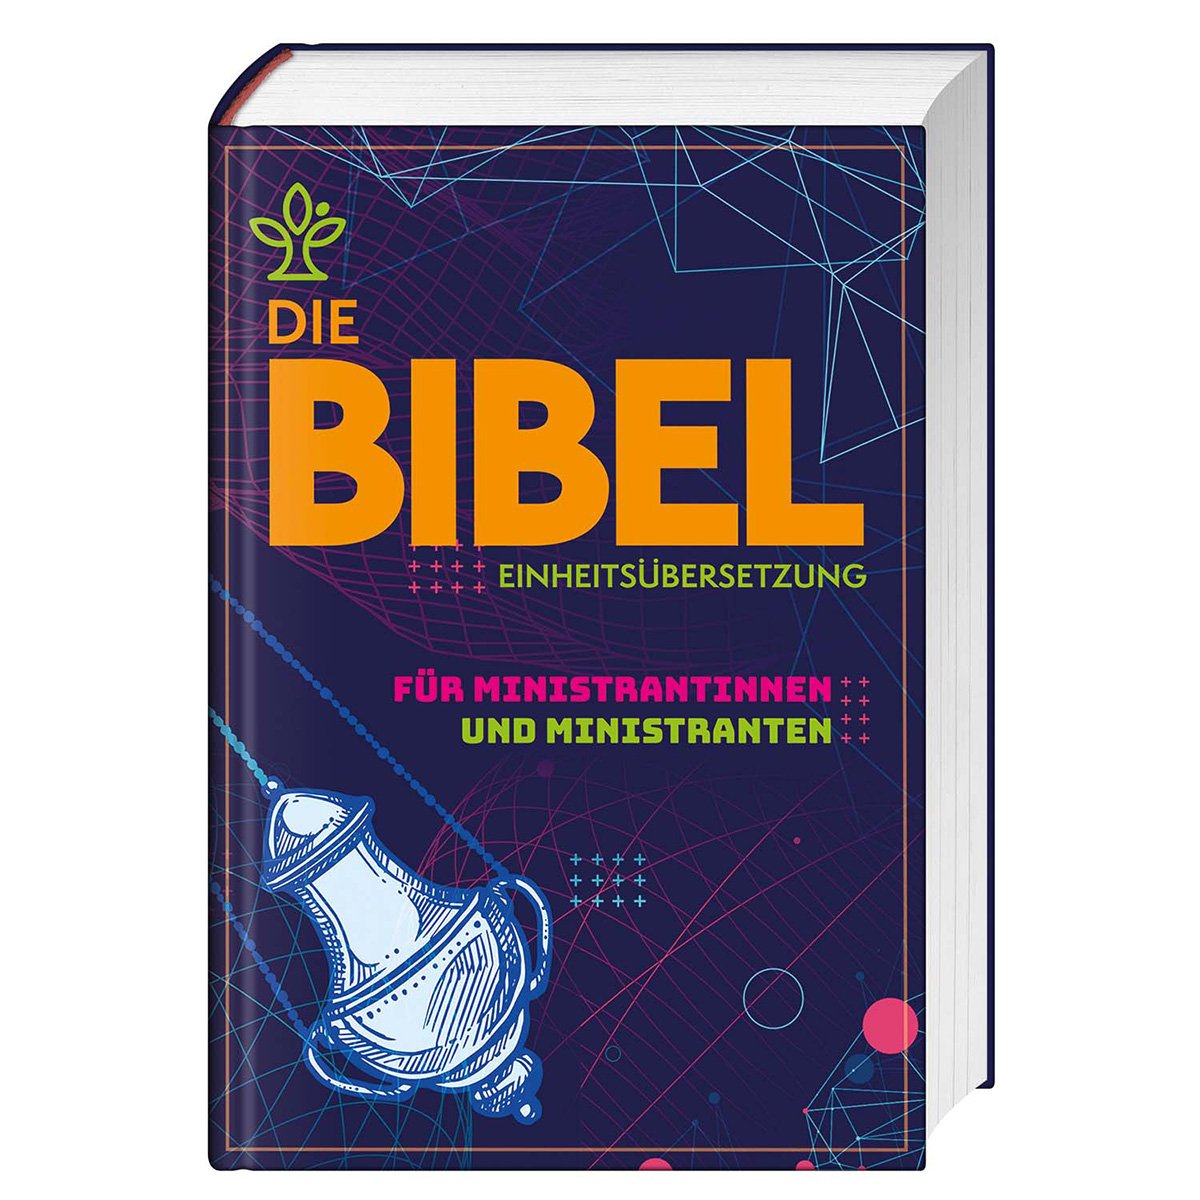 Die Bibel für Ministrantinnen und Ministranten (c) Vivat / St. Benno Verlag